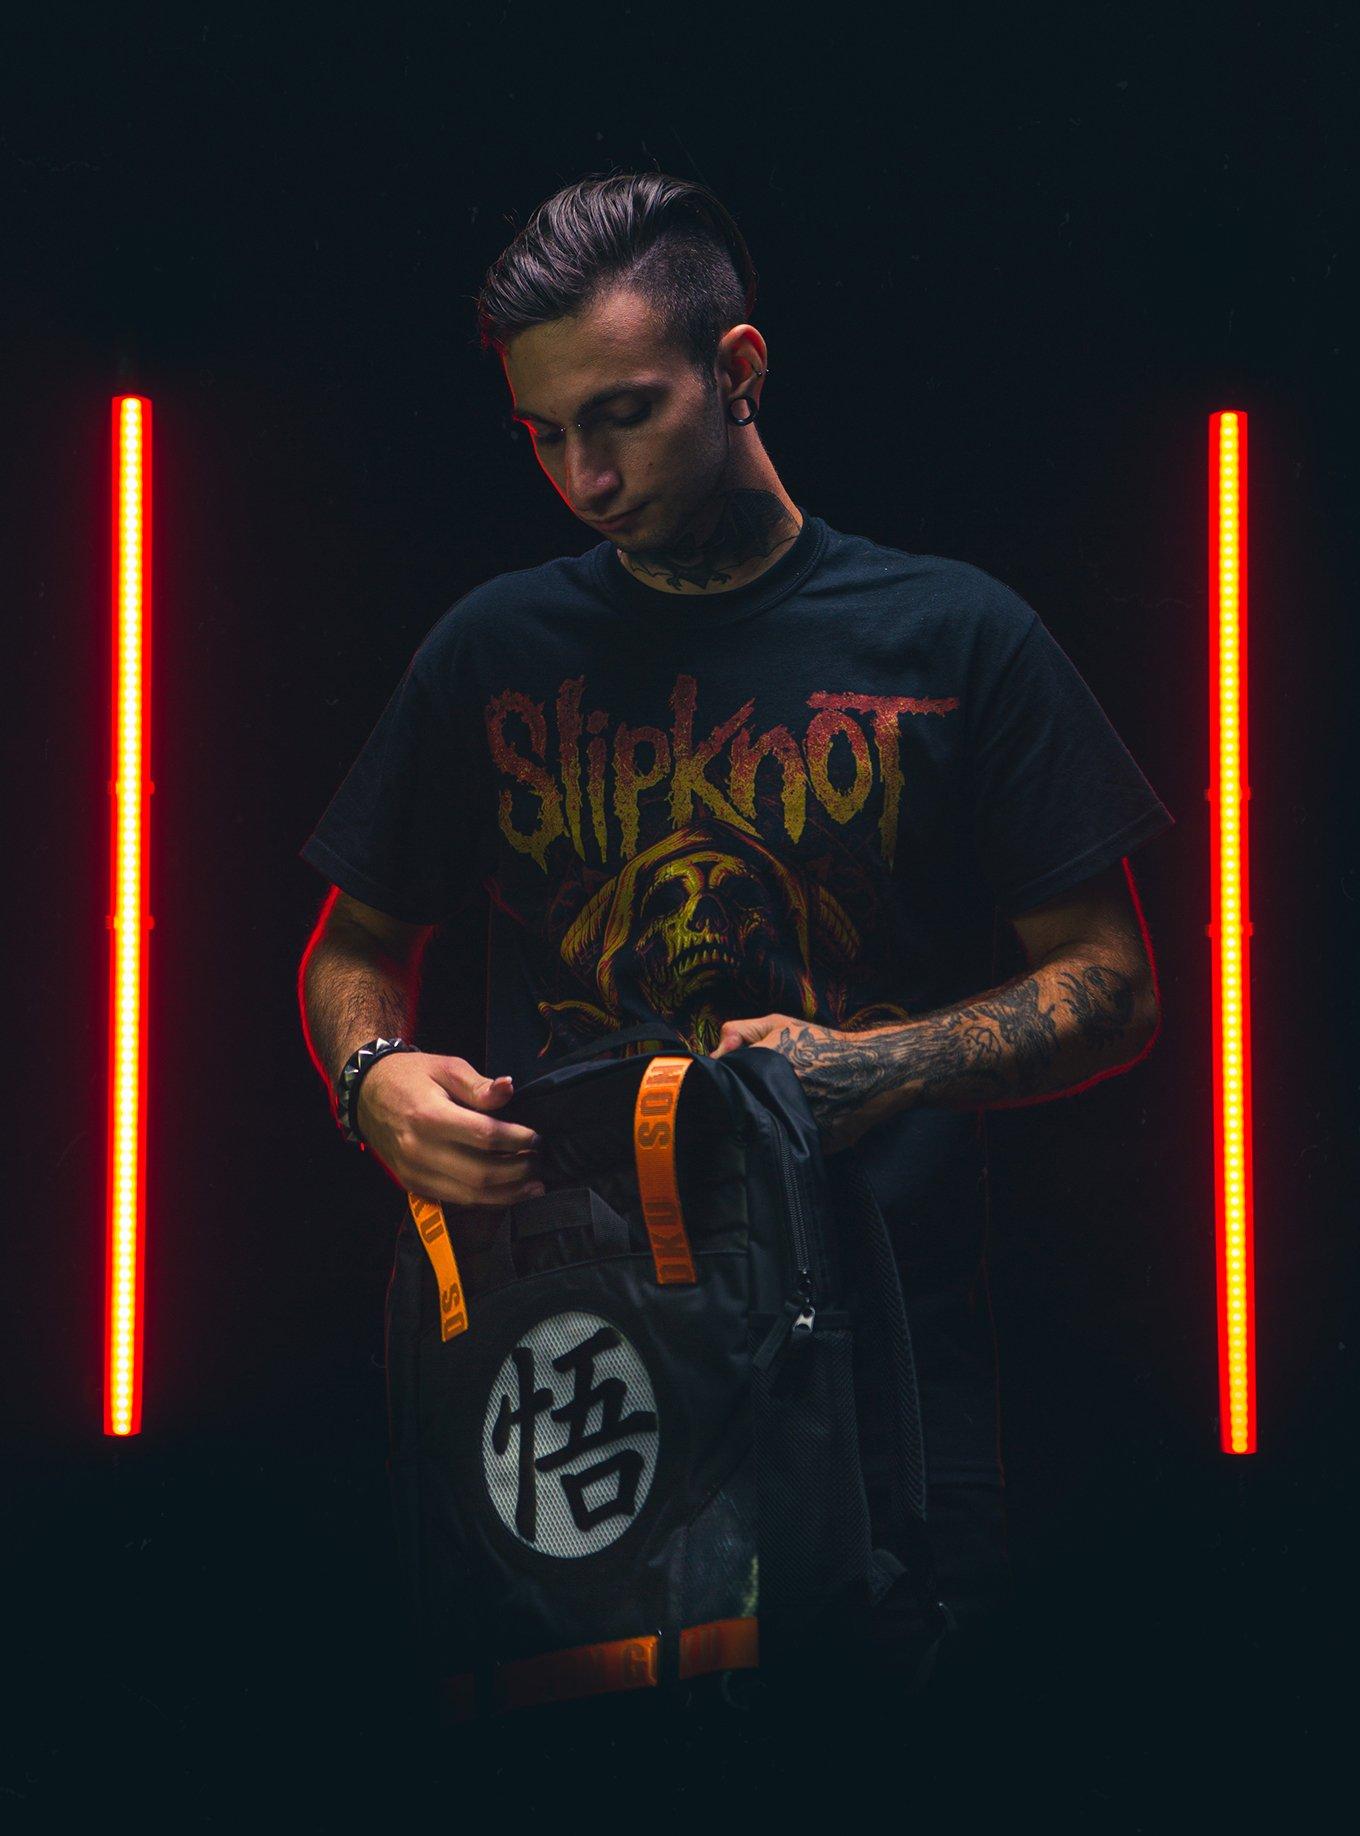 Slipknot Reaper T-Shirt, BLACK, alternate